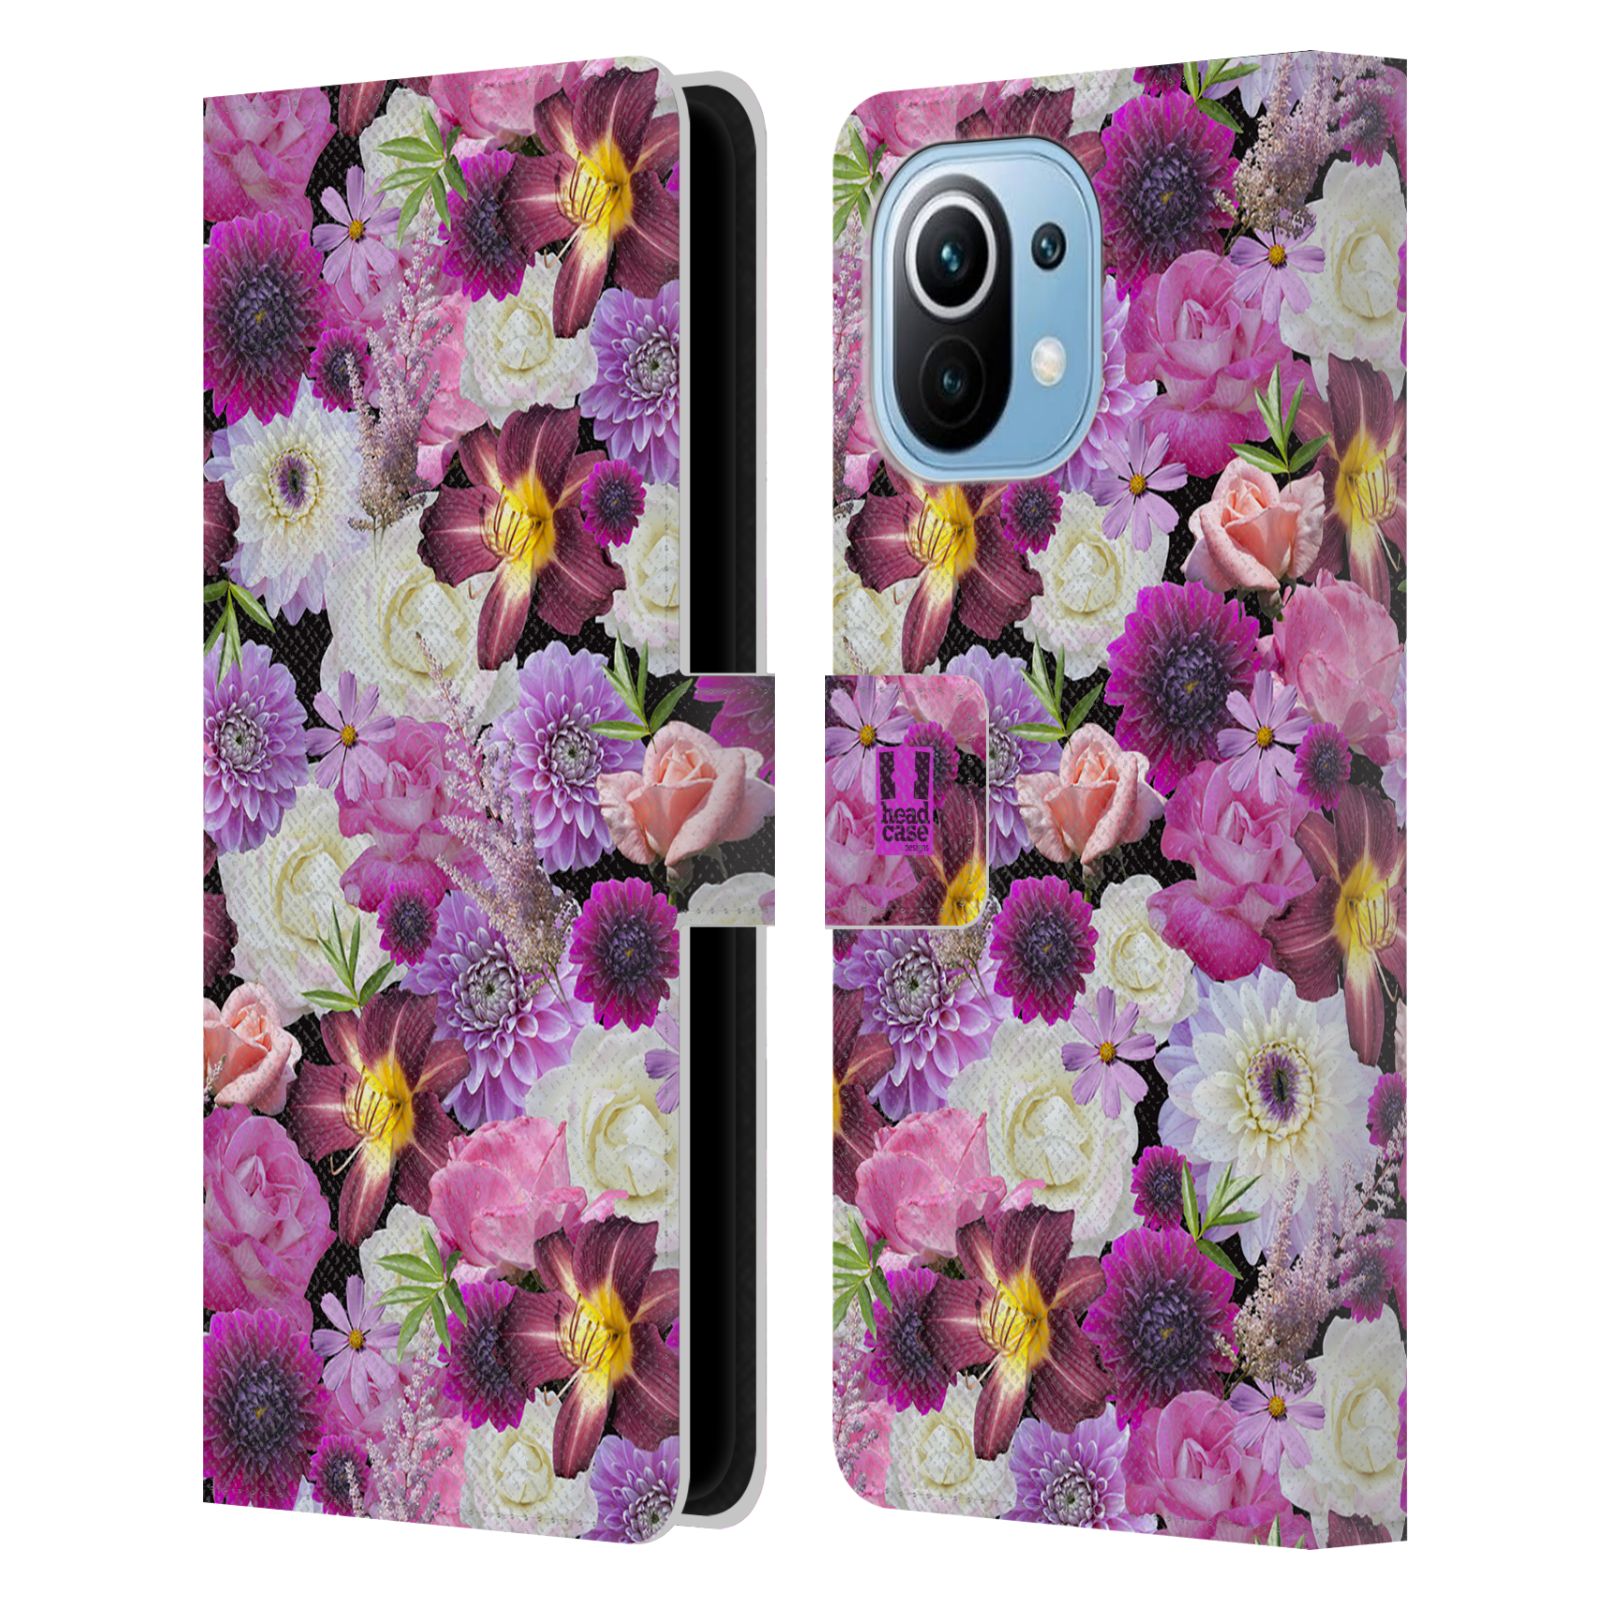 Pouzdro HEAD CASE na mobil Xiaomi Mi 11 květy foto fialová a bílá